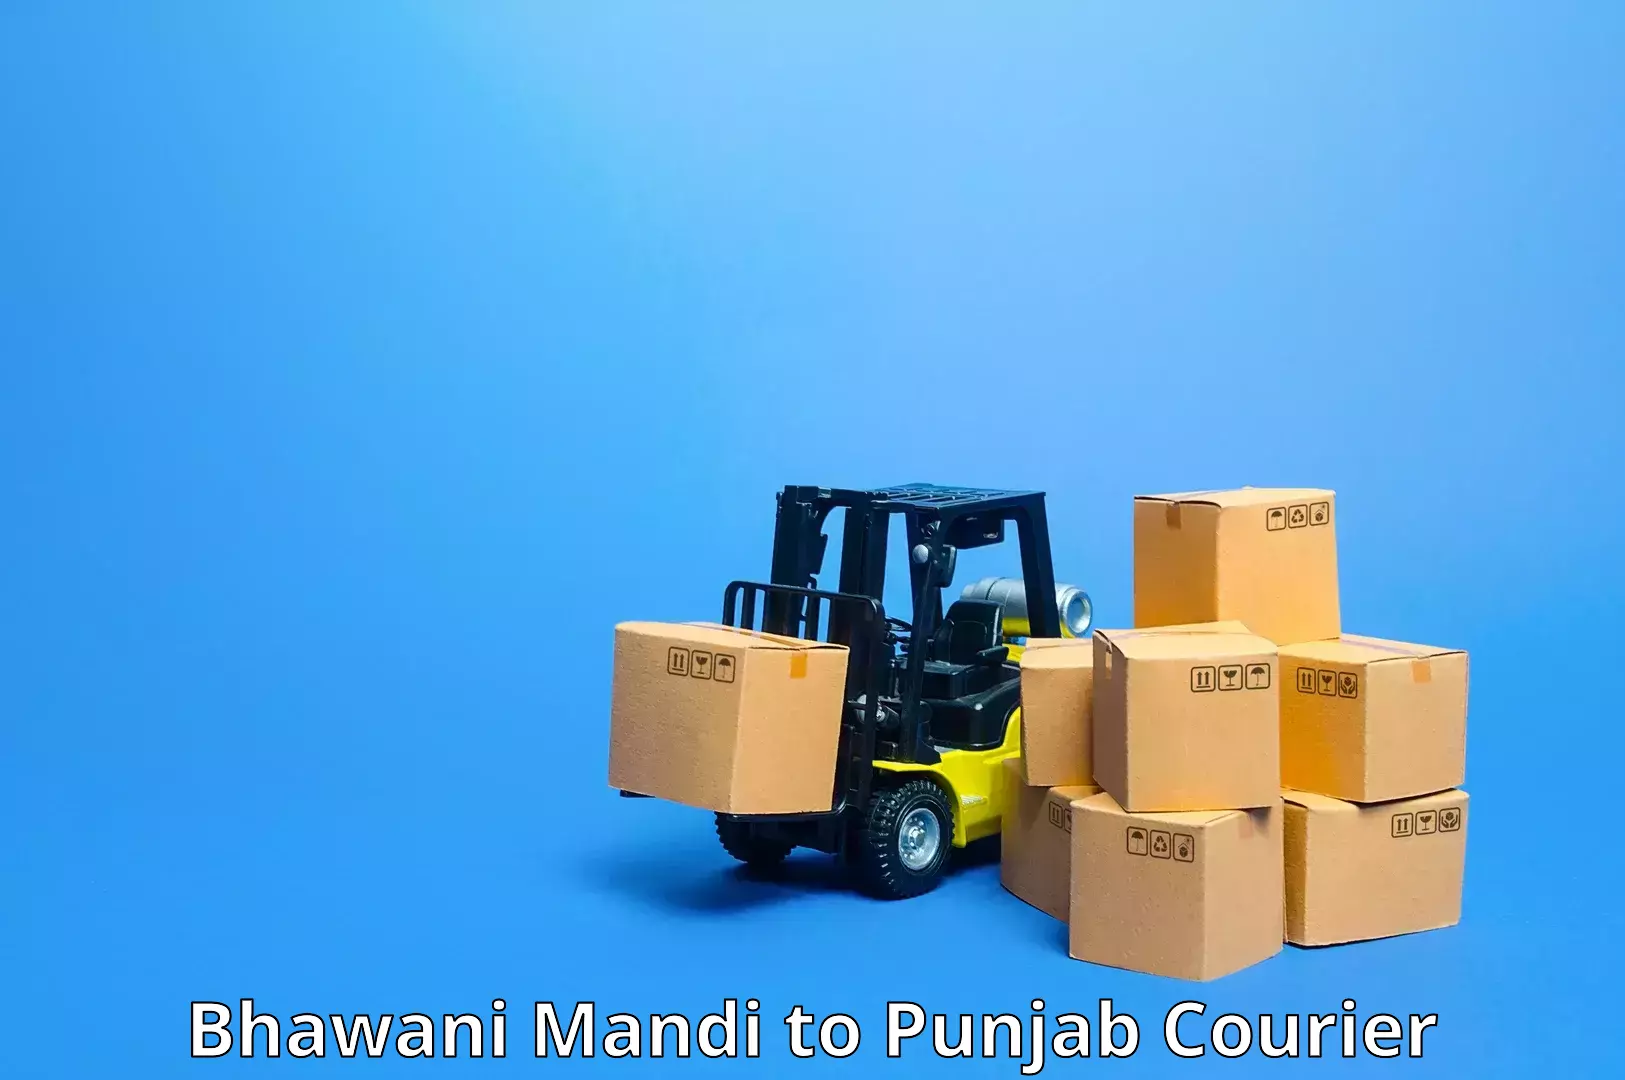 24/7 courier service Bhawani Mandi to Kapurthala